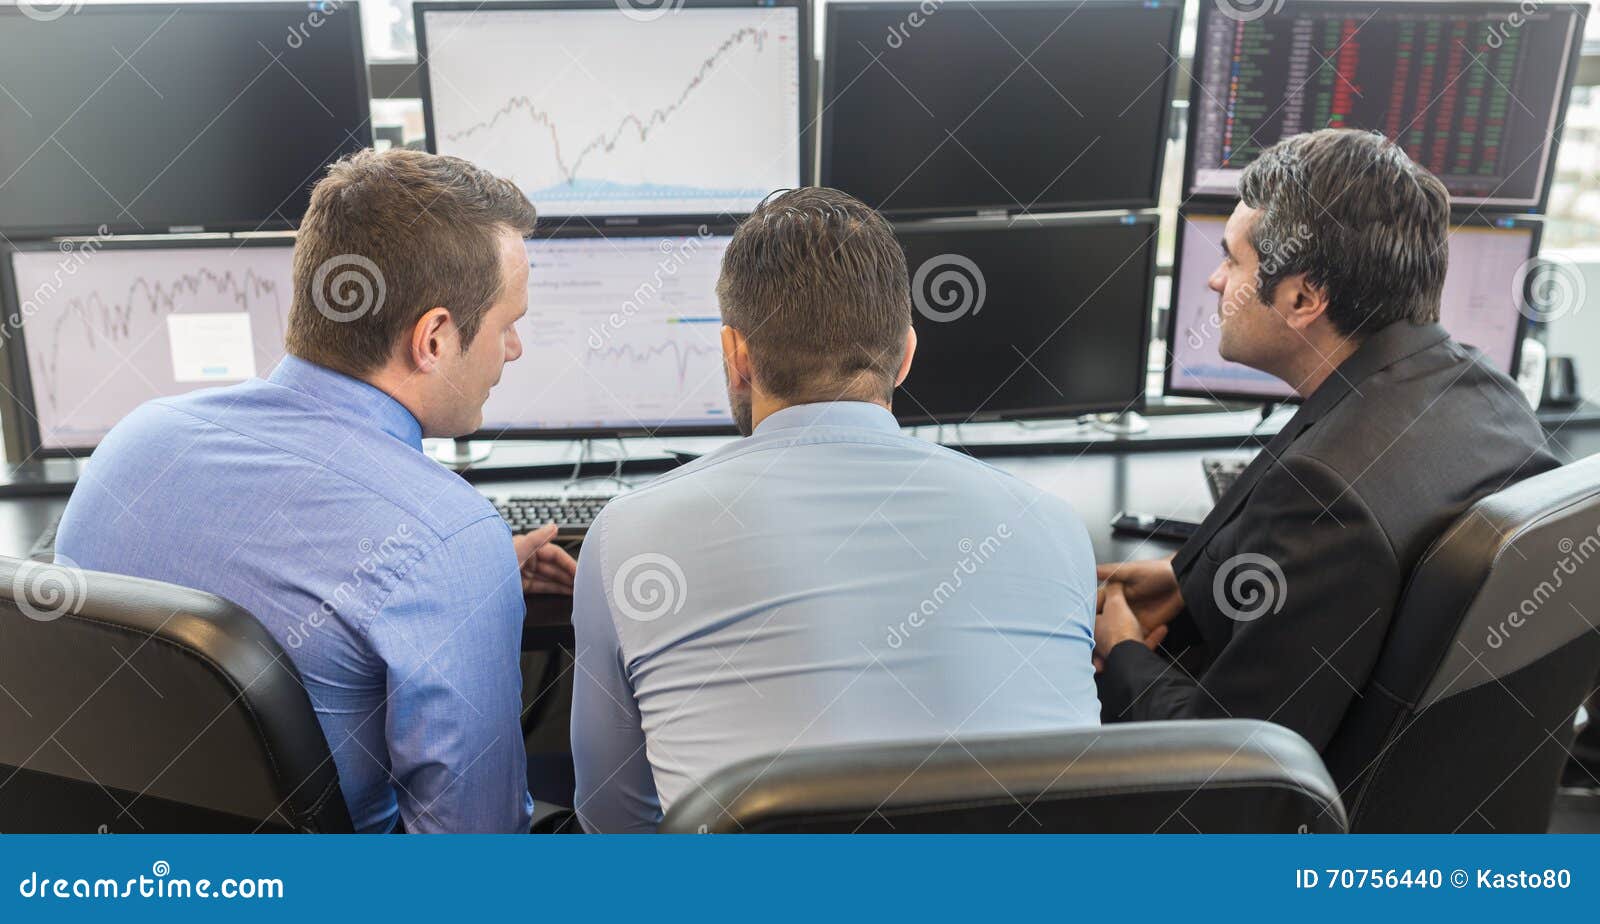 Affärsfolk som ser datorskärmar. Affärsmän som ser data på åtskilliga datorskärmar i företags kontor Affärsfolk som direktanslutet handlar Affär, egenföretagande och lagarbetsbegrepp